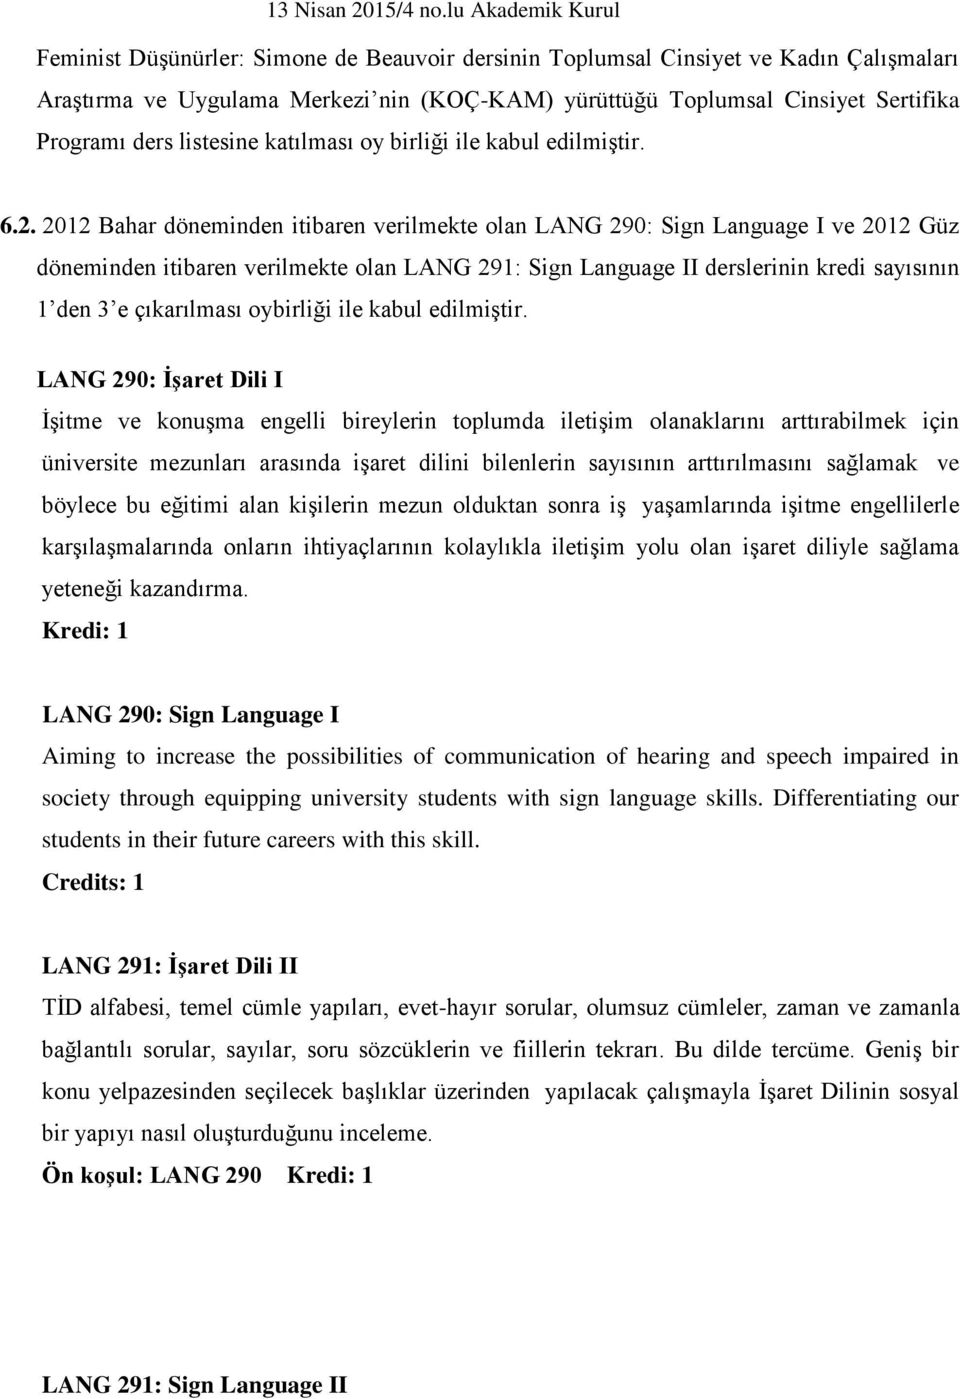 2012 Bahar döneminden itibaren verilmekte olan LANG 290: Sign Language I ve 2012 Güz döneminden itibaren verilmekte olan LANG 291: Sign Language II derslerinin kredi sayısının 1 den 3 e çıkarılması